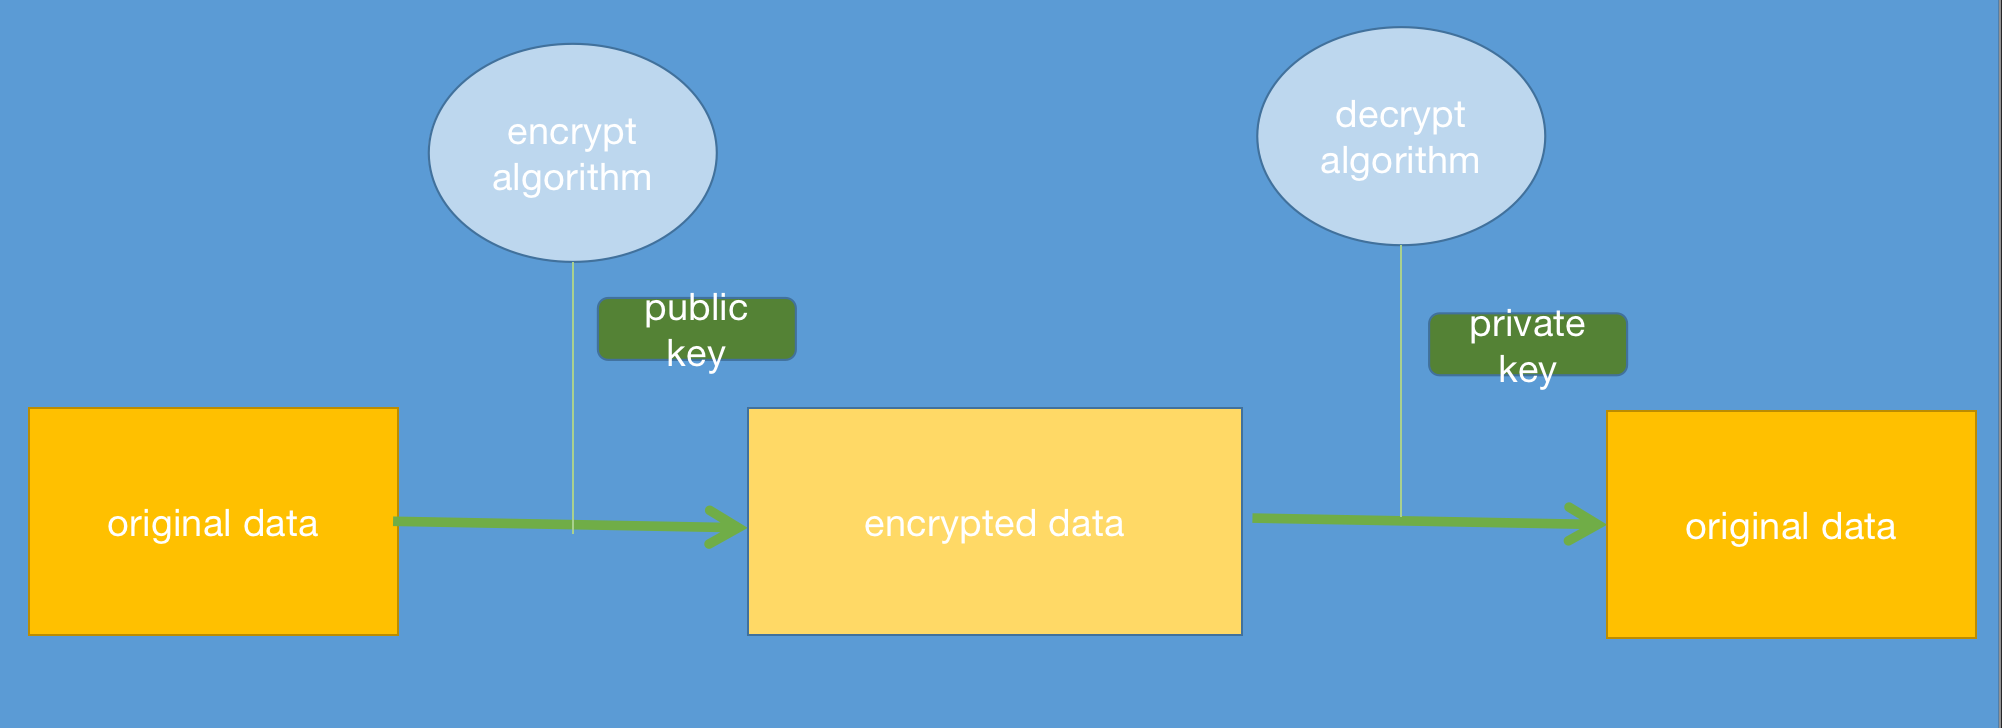 python rsa private key decrypt